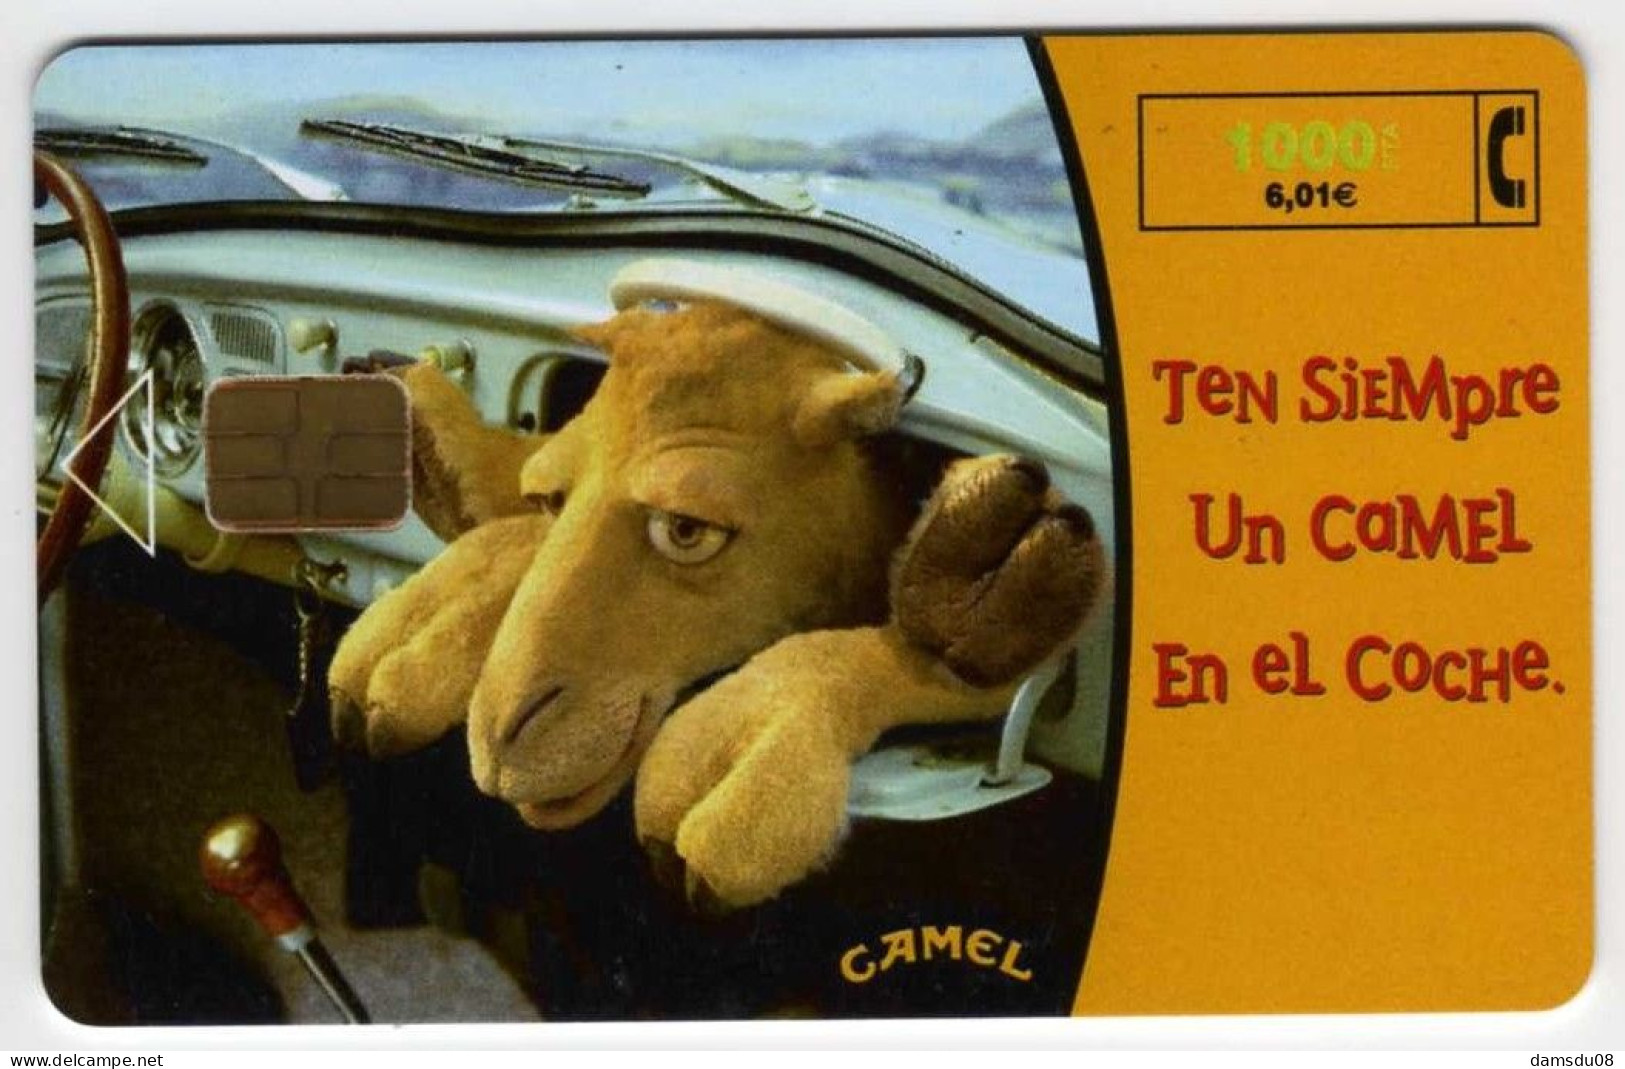 Espagne 1000 PTA Camel 01/99 1035000 Exemplaires Vide - Emissions Basiques